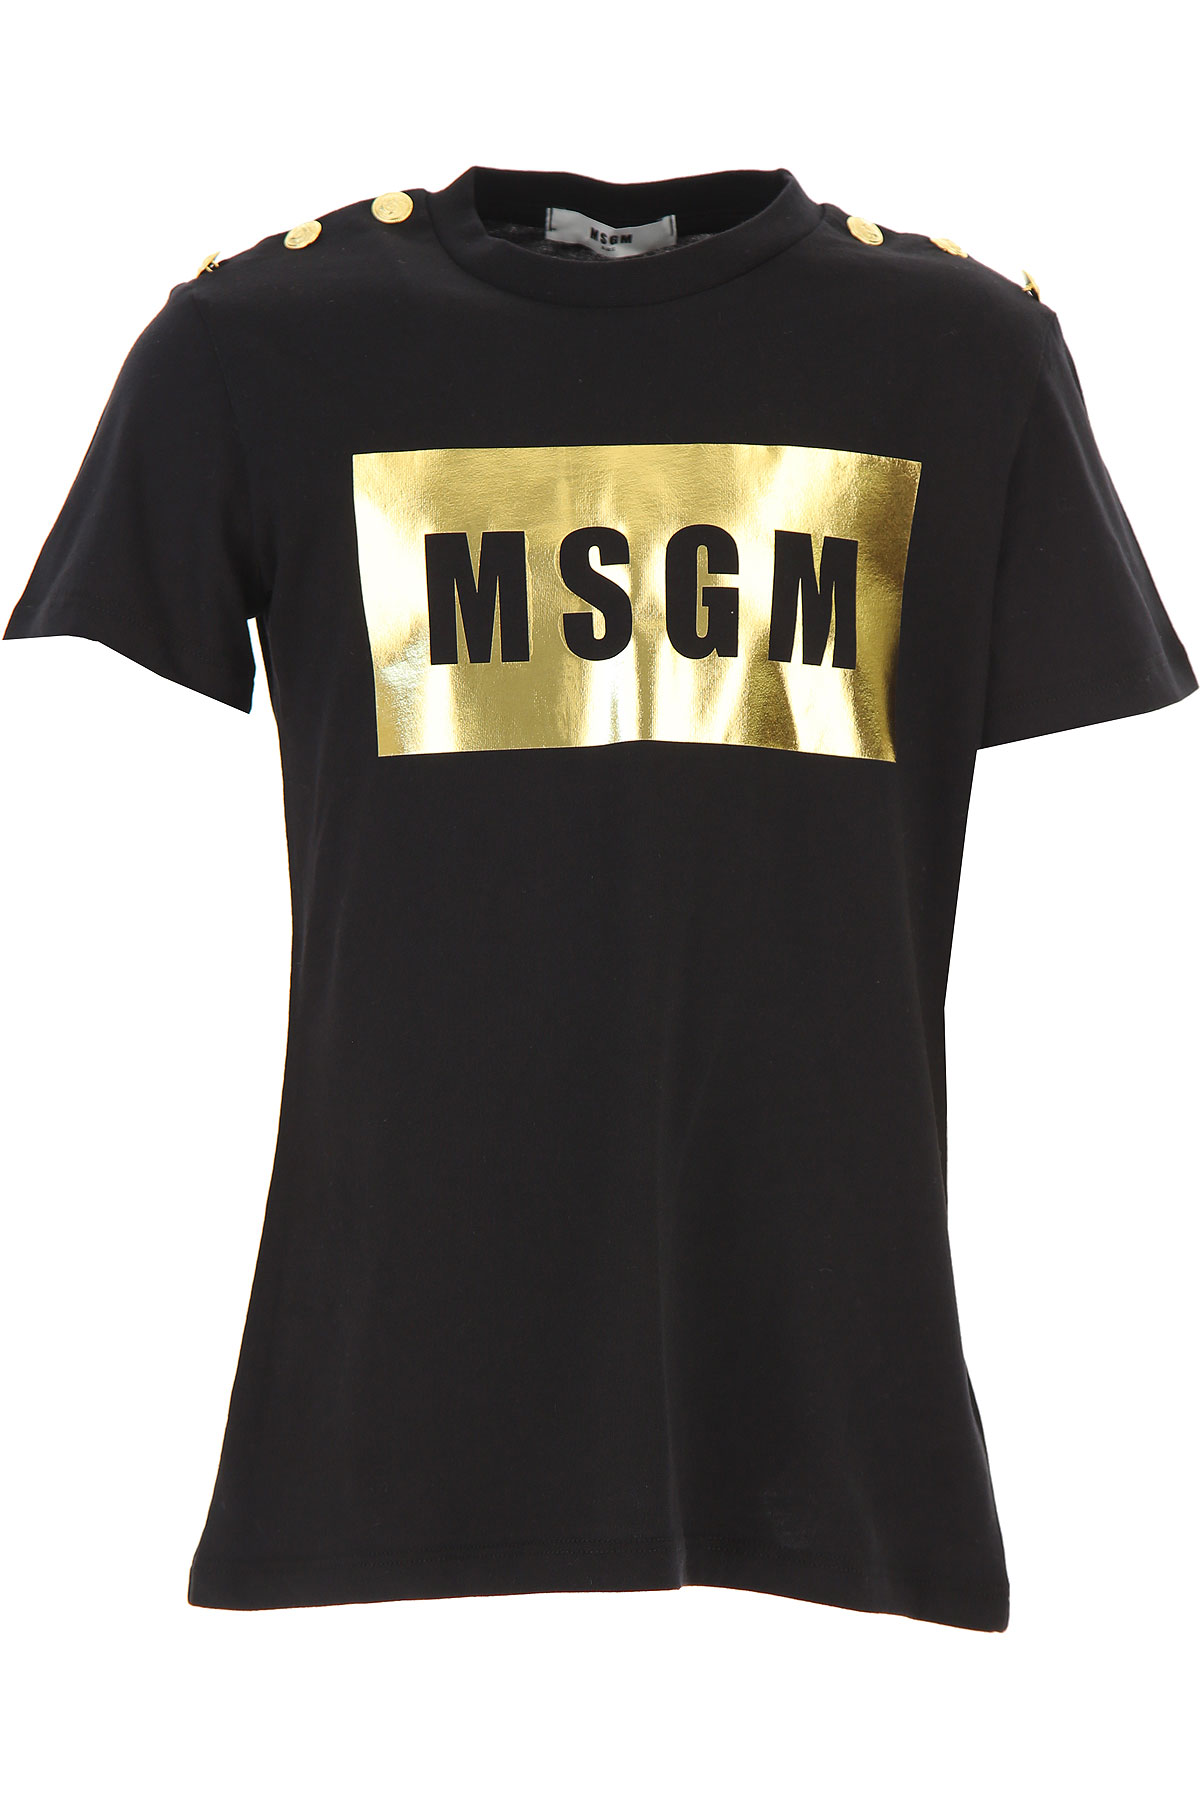 MSGM Kinder T-Shirt für Mädchen Günstig im Sale, Schwarz, Baumwolle, 2017, 10Y 12Y 8Y